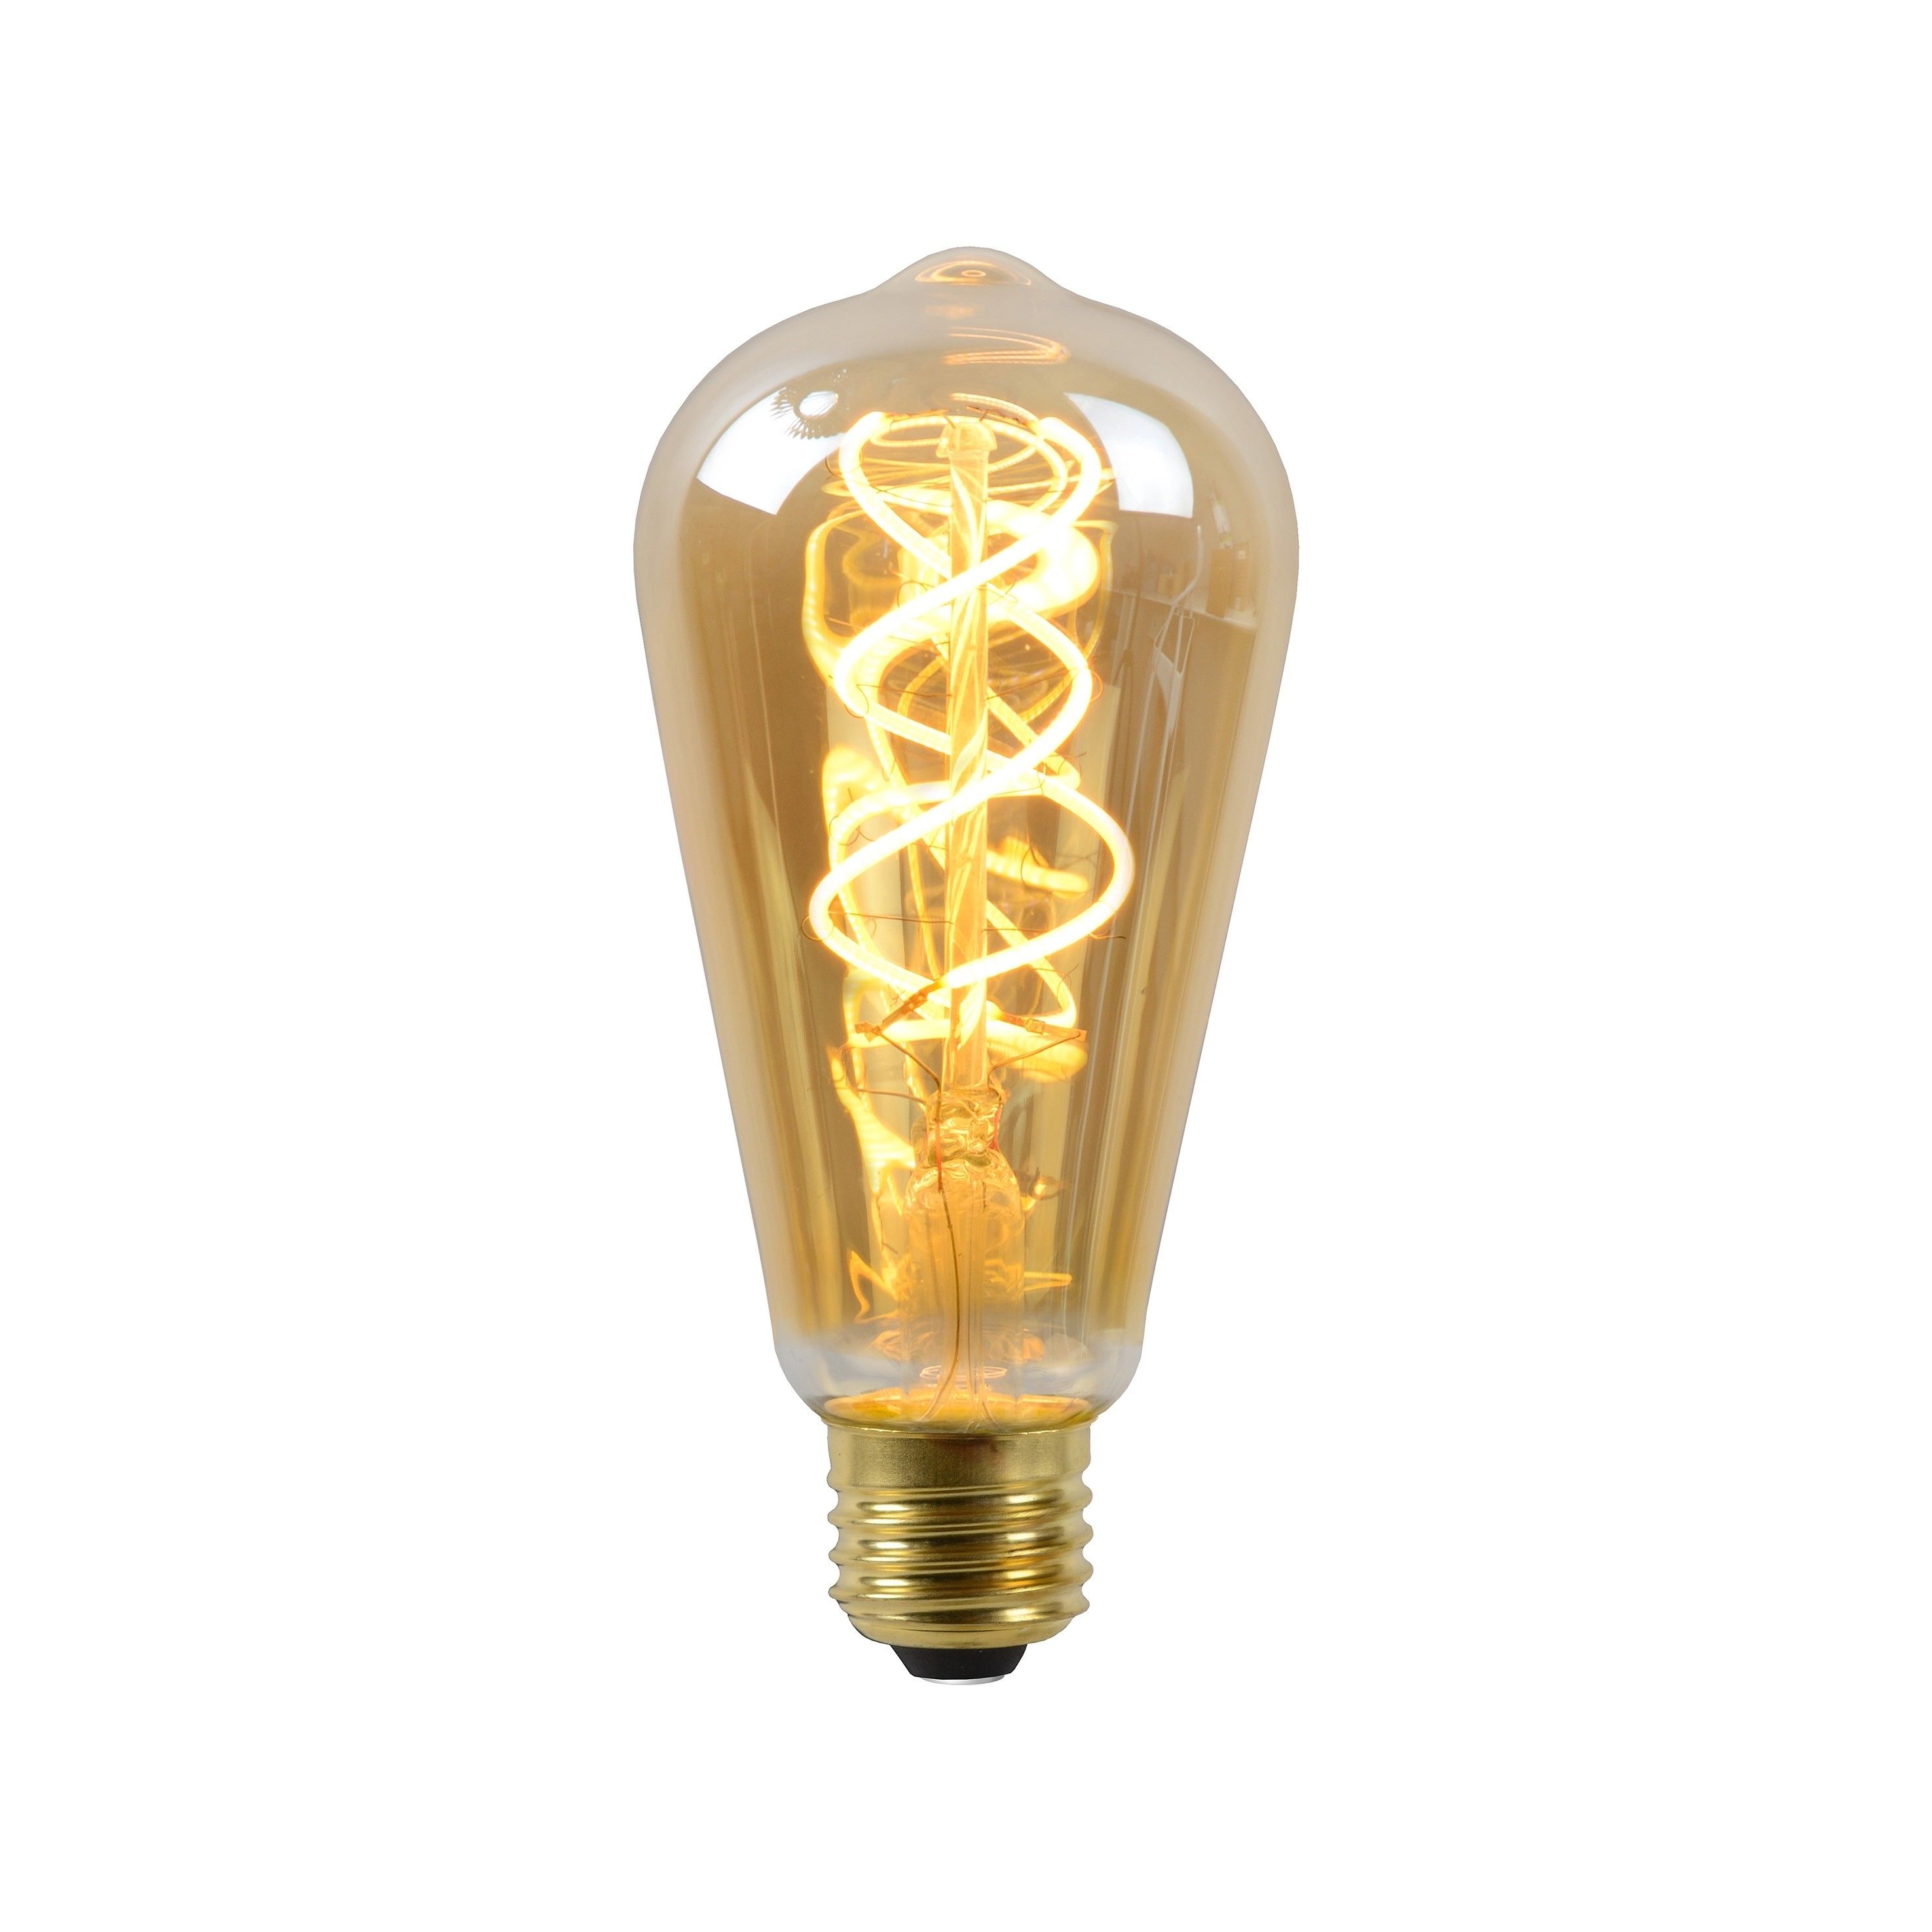 Dek de tafel Een zin Verrast zijn Lucide LED Bulb Twilight Sensor - Ø 6 cm - E27 - 4W niet dimbaar - 2200K -  amber | Lichtkoning